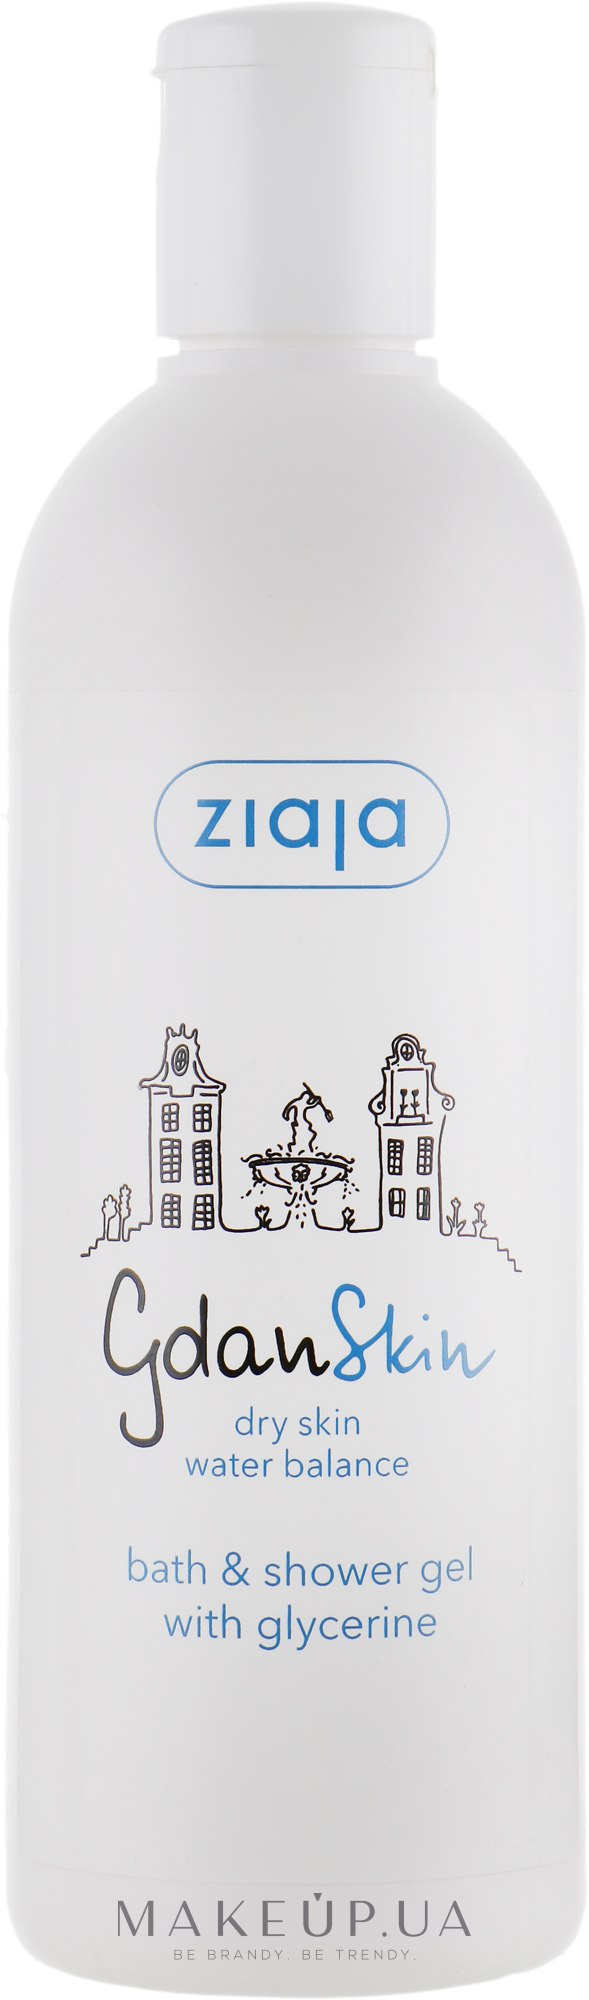 Жидкое мыло для тела с глицерином - Ziaja Gdanskin  — фото 300ml